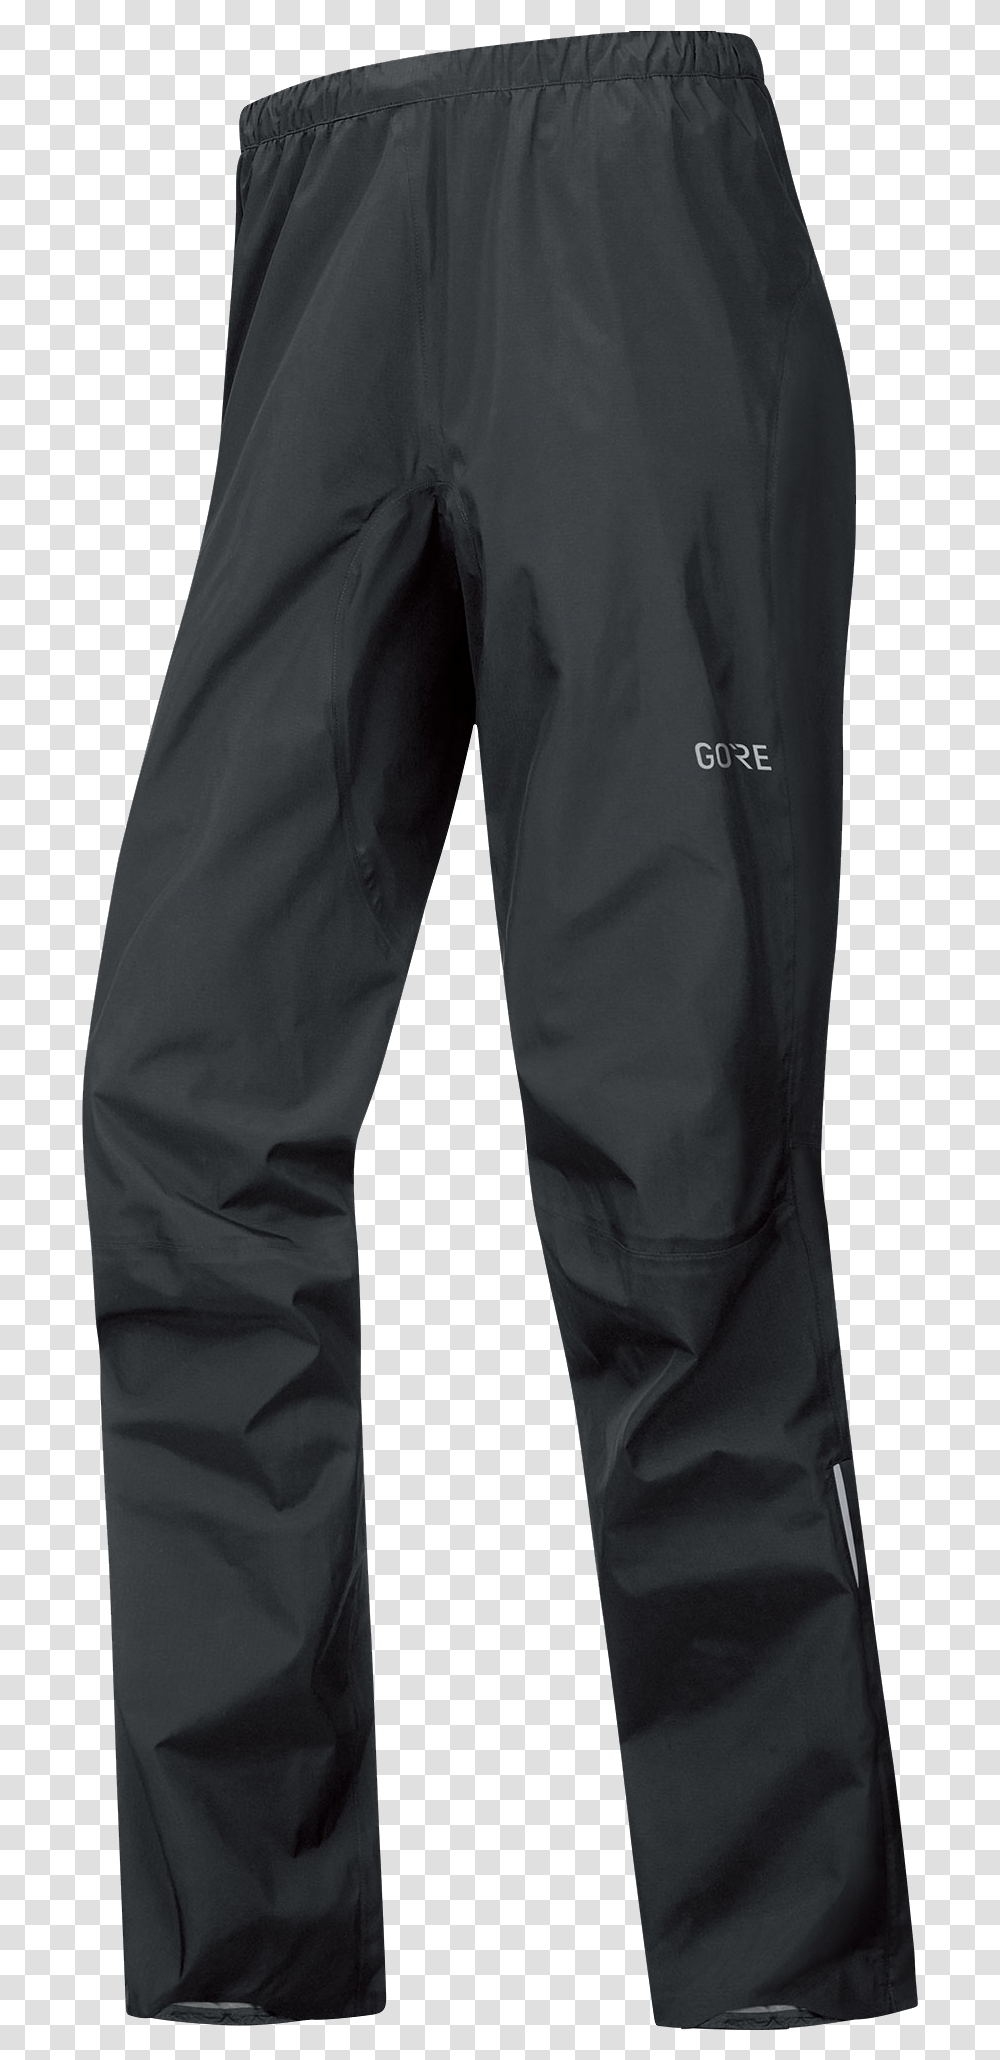 Gore Wear C5 Active Trail Mtb Pants Pantalon De Travail Noir, Clothing, Apparel, Jeans, Denim Transparent Png